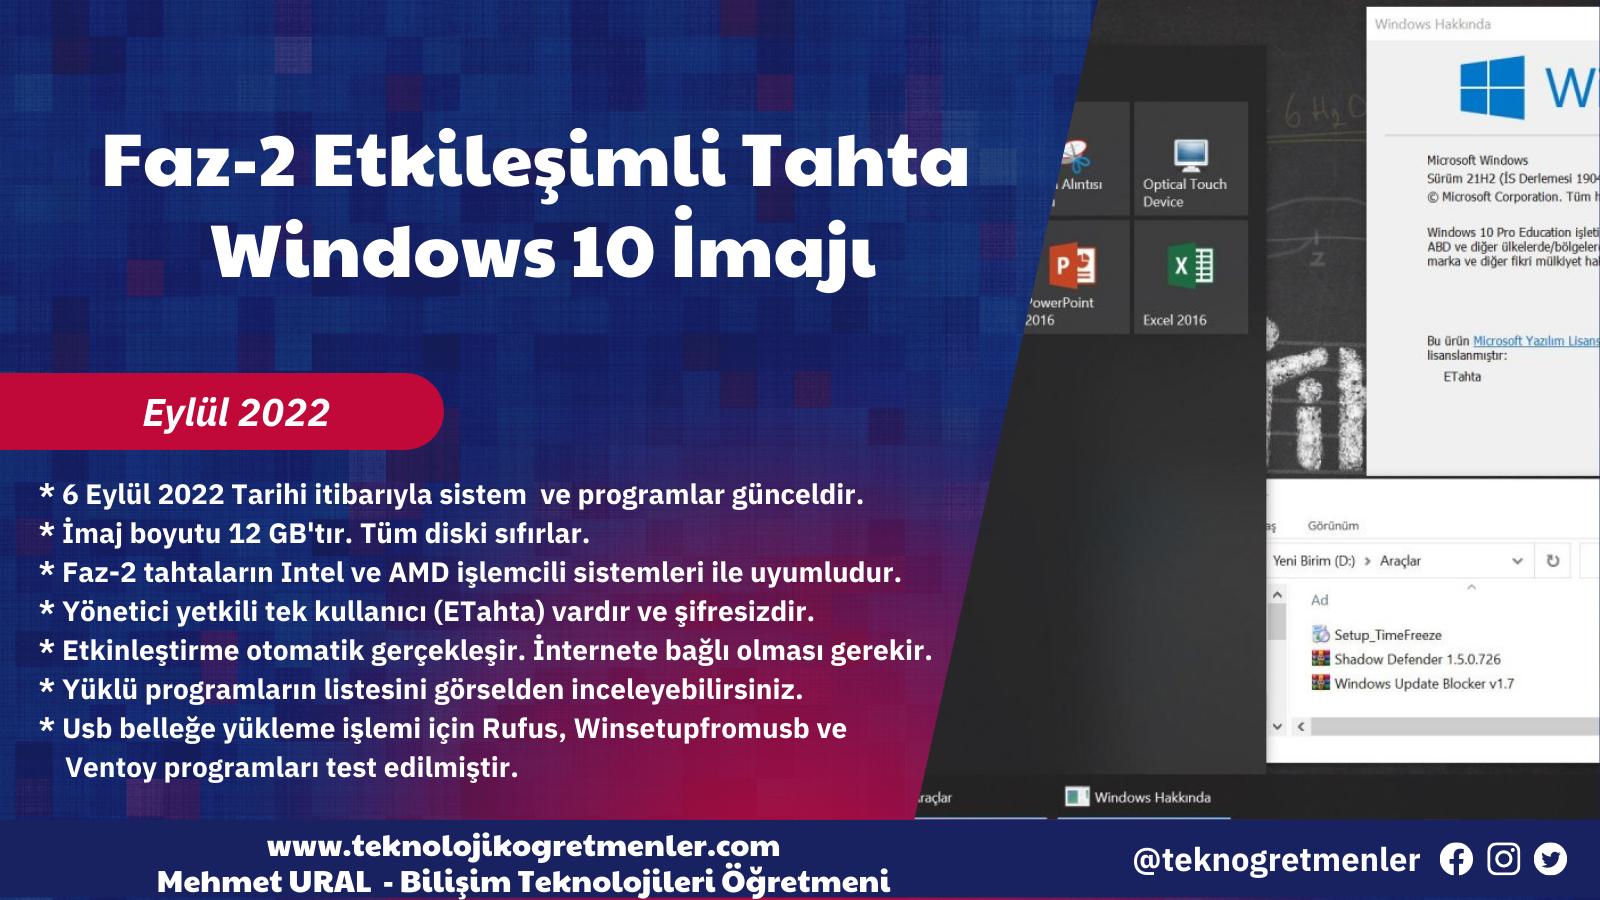 Faz-2 Etkileşimli Tahta Windows 10 İmajı – Eylül 2022